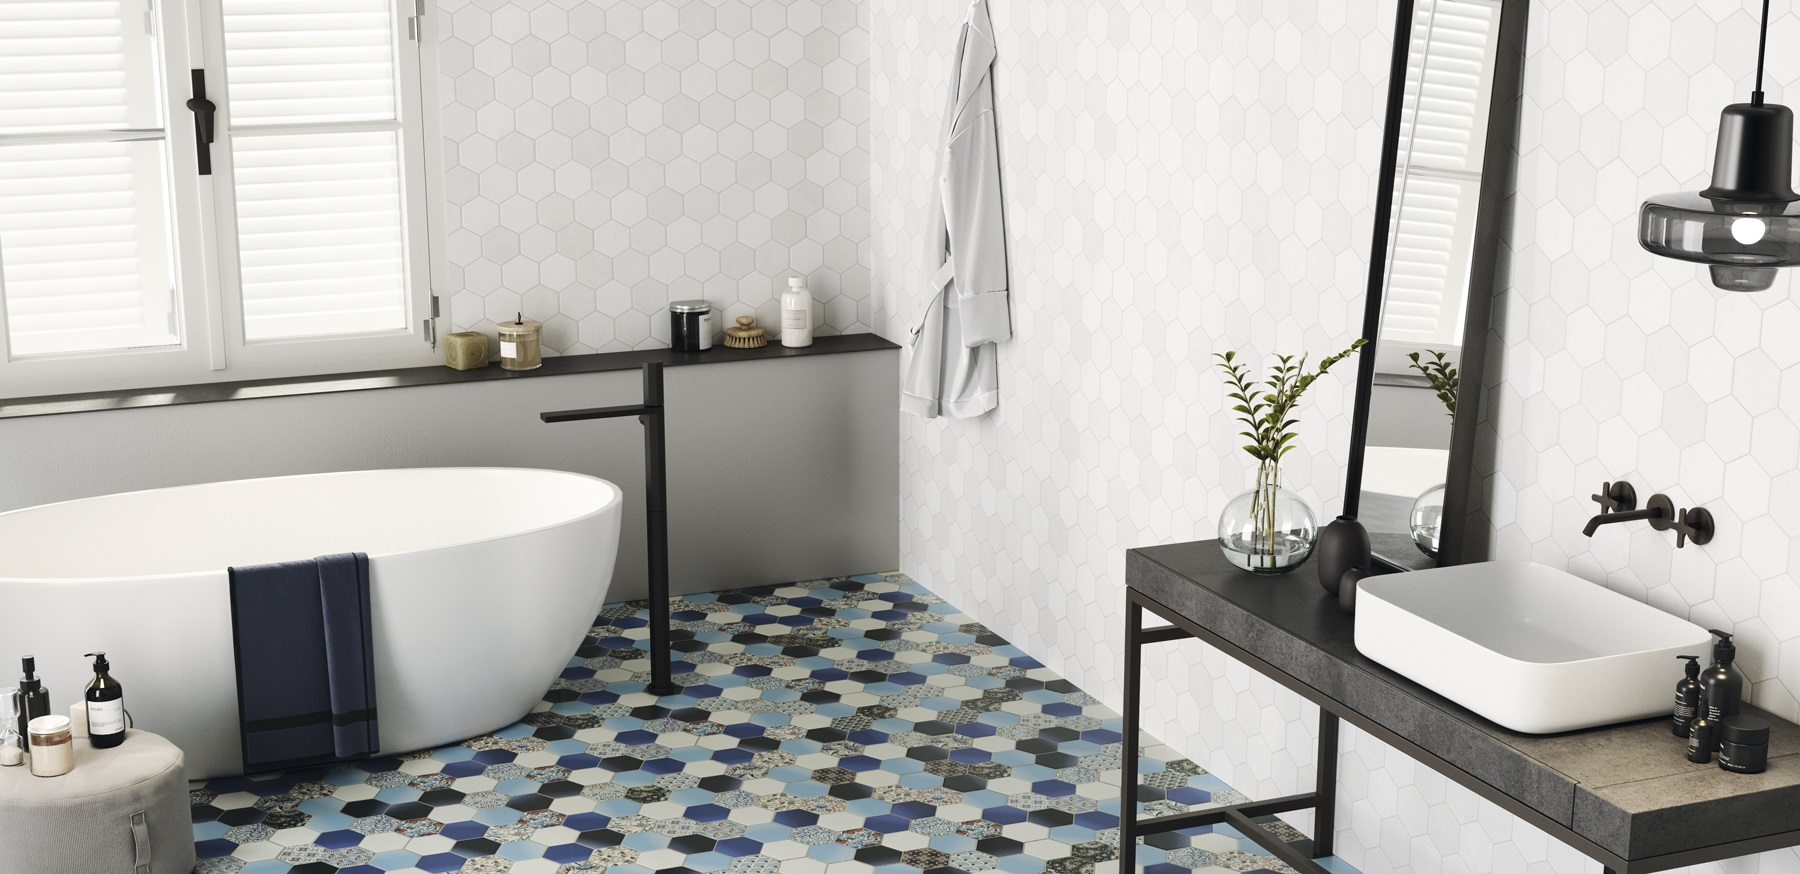 Carrelage uni blanc dans une salle de bain épurée, sur sol à motif géométrique bleu, avec baignoire blanche, étagère noire et accessoires déco